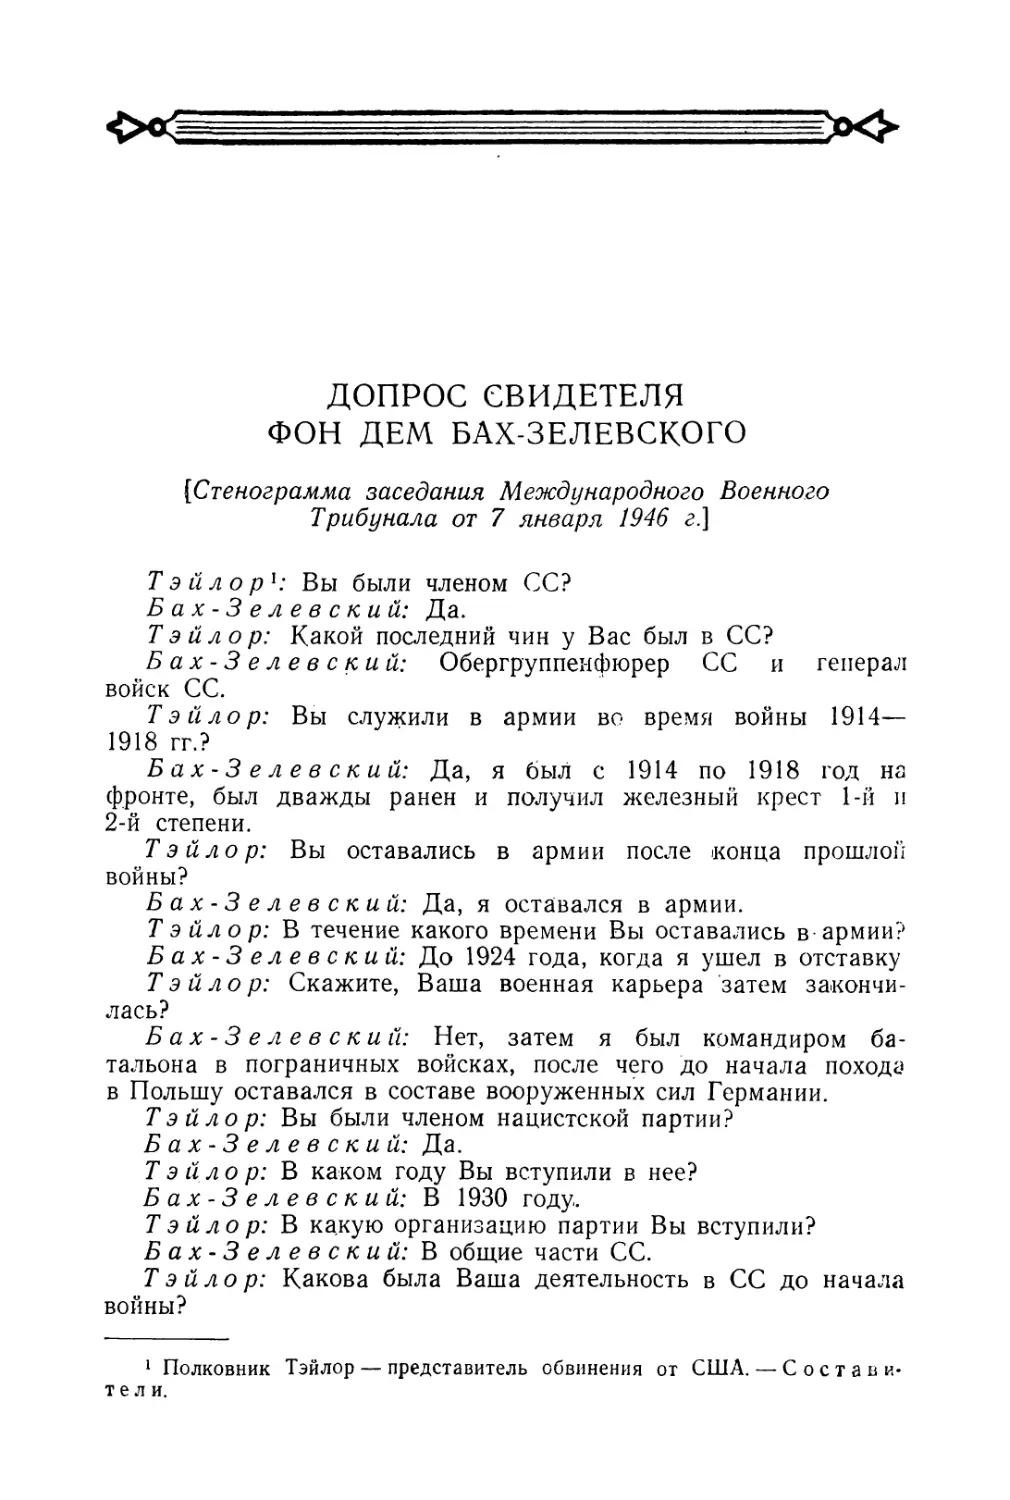 Допрос свидетеля фон дем Бах-Зелевского в заседании Трибунала 7 января 1946 г.